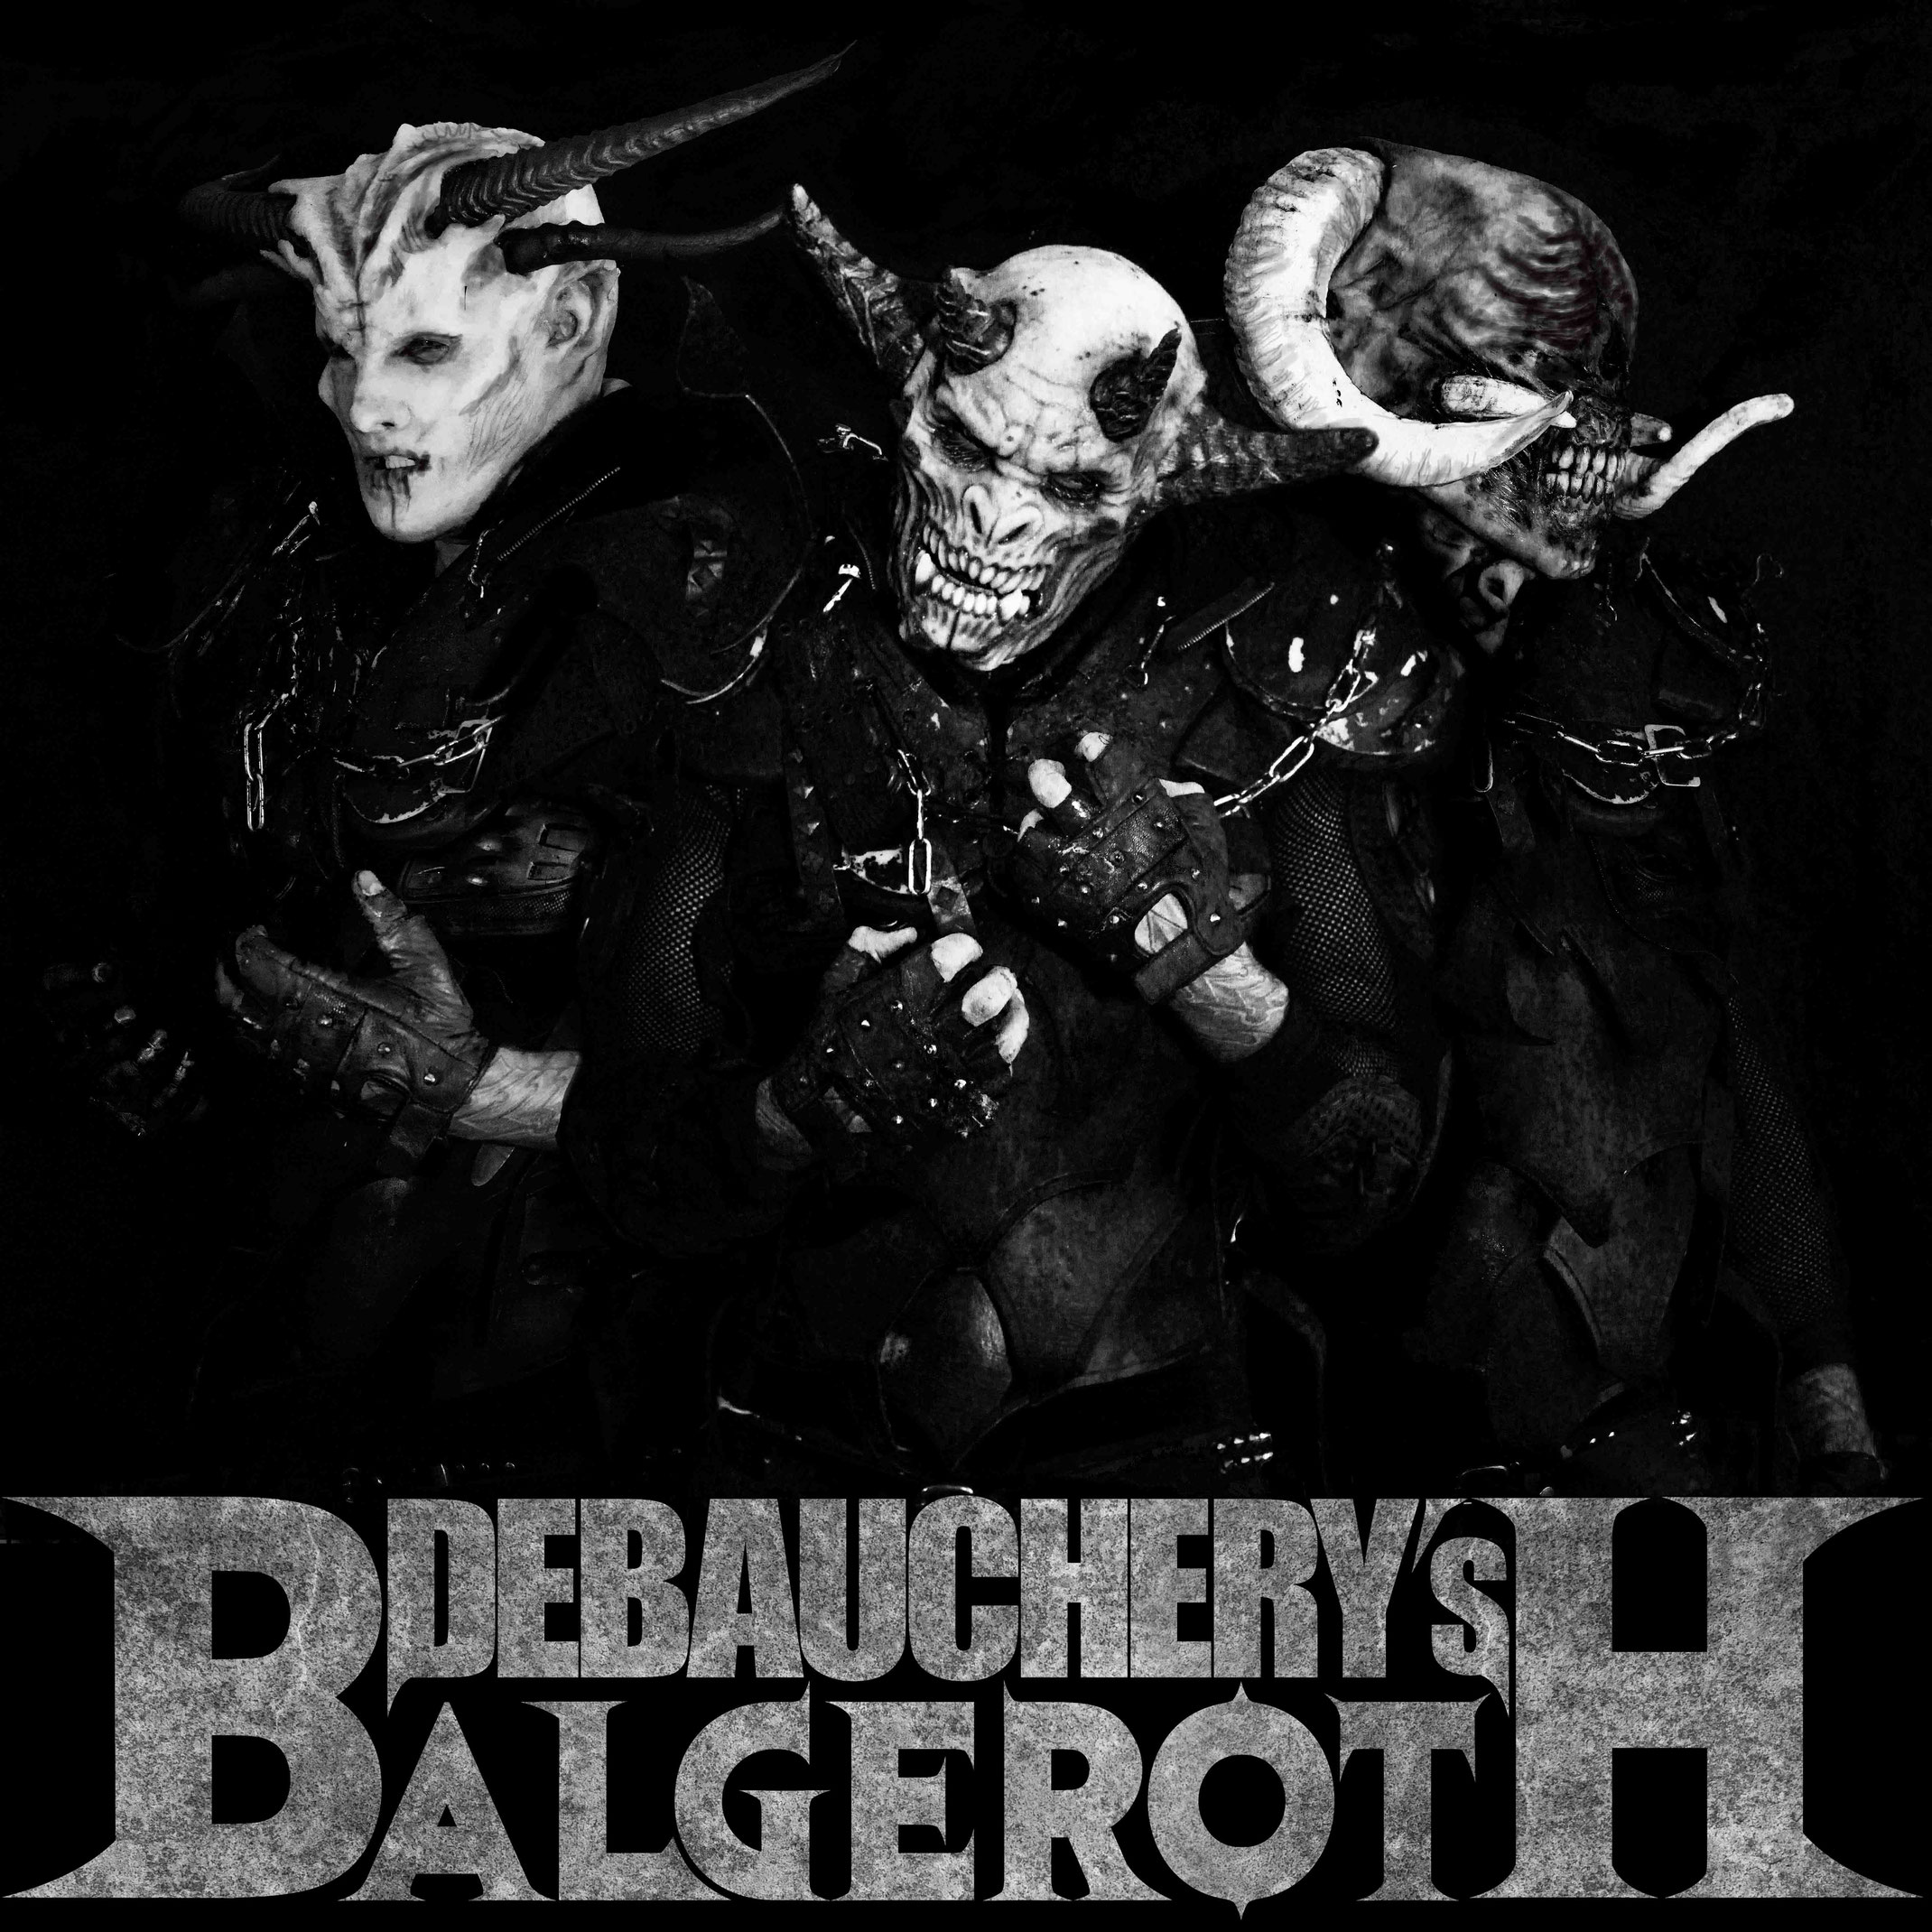 Debauchery-balgeroth 5